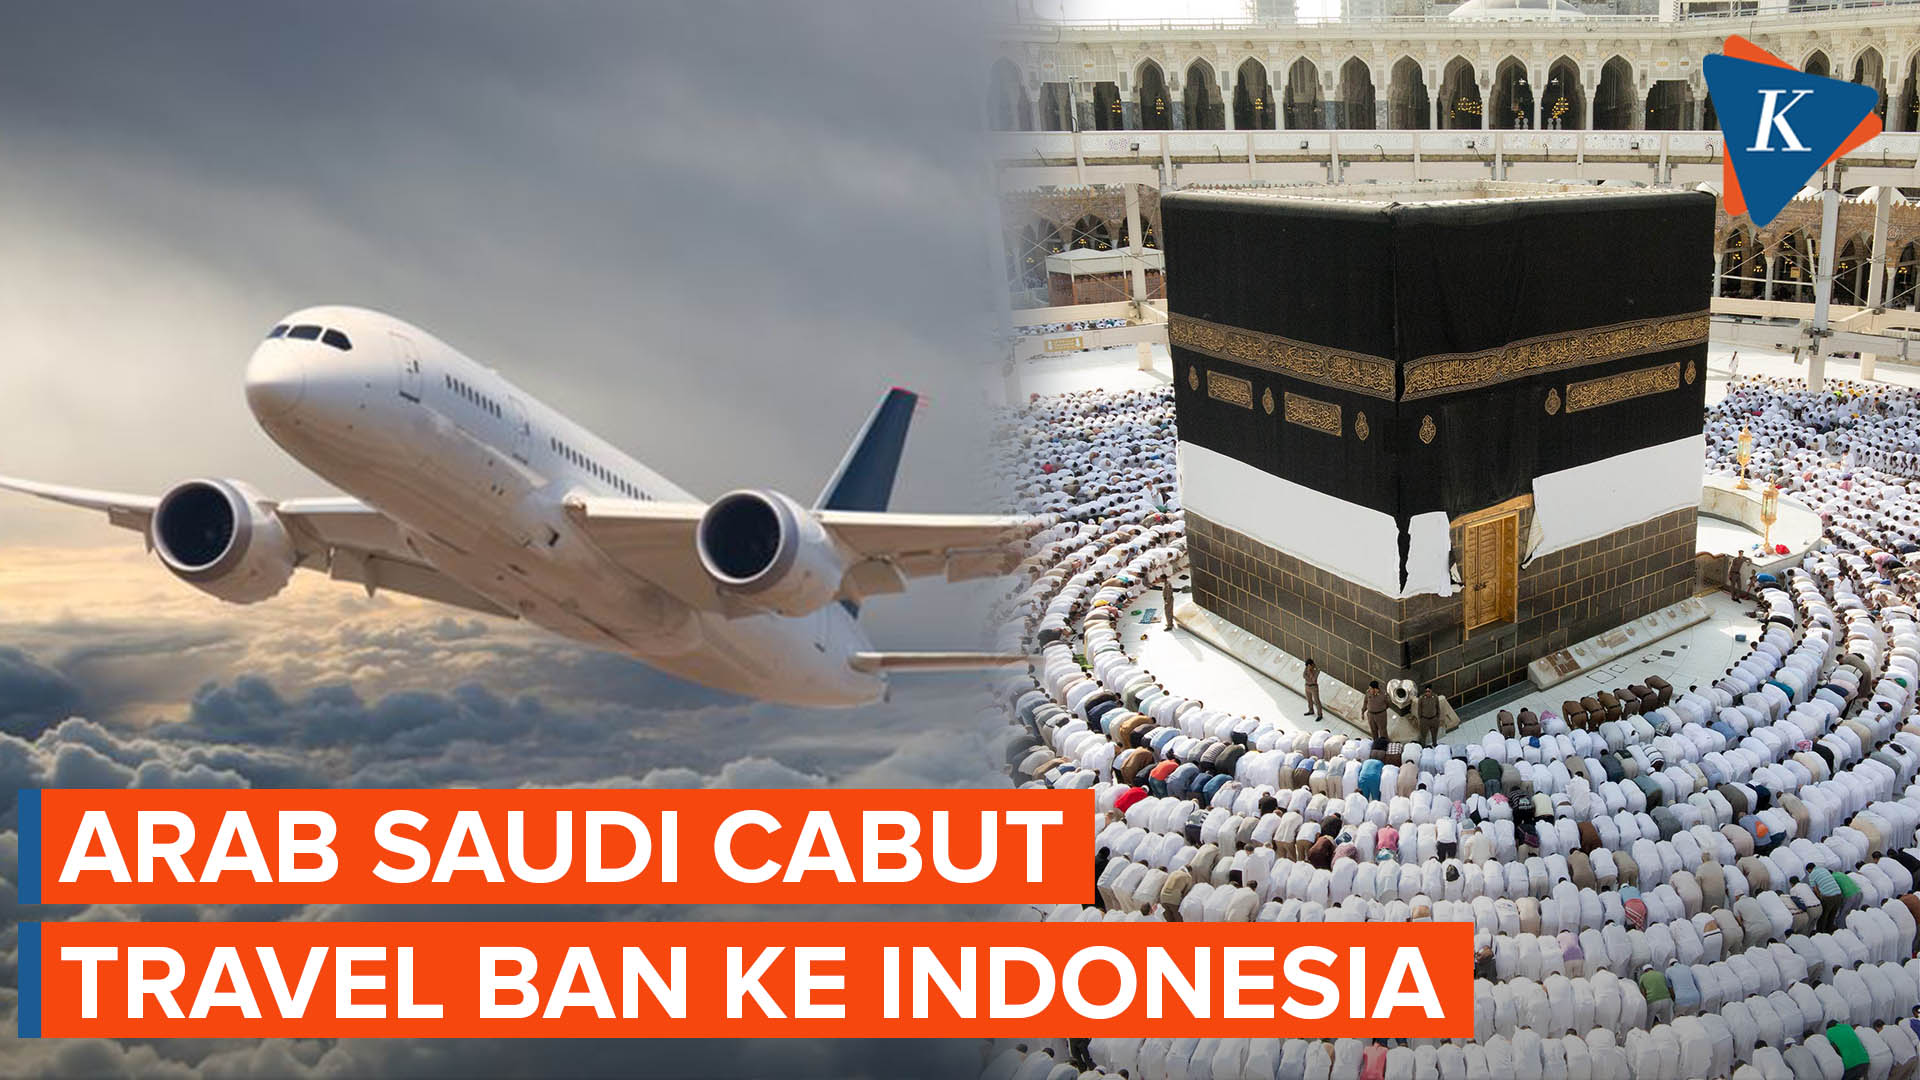 Arab Saudi Cabut Travel Ban, Pemerintah Indonesia Beri Apresiasi